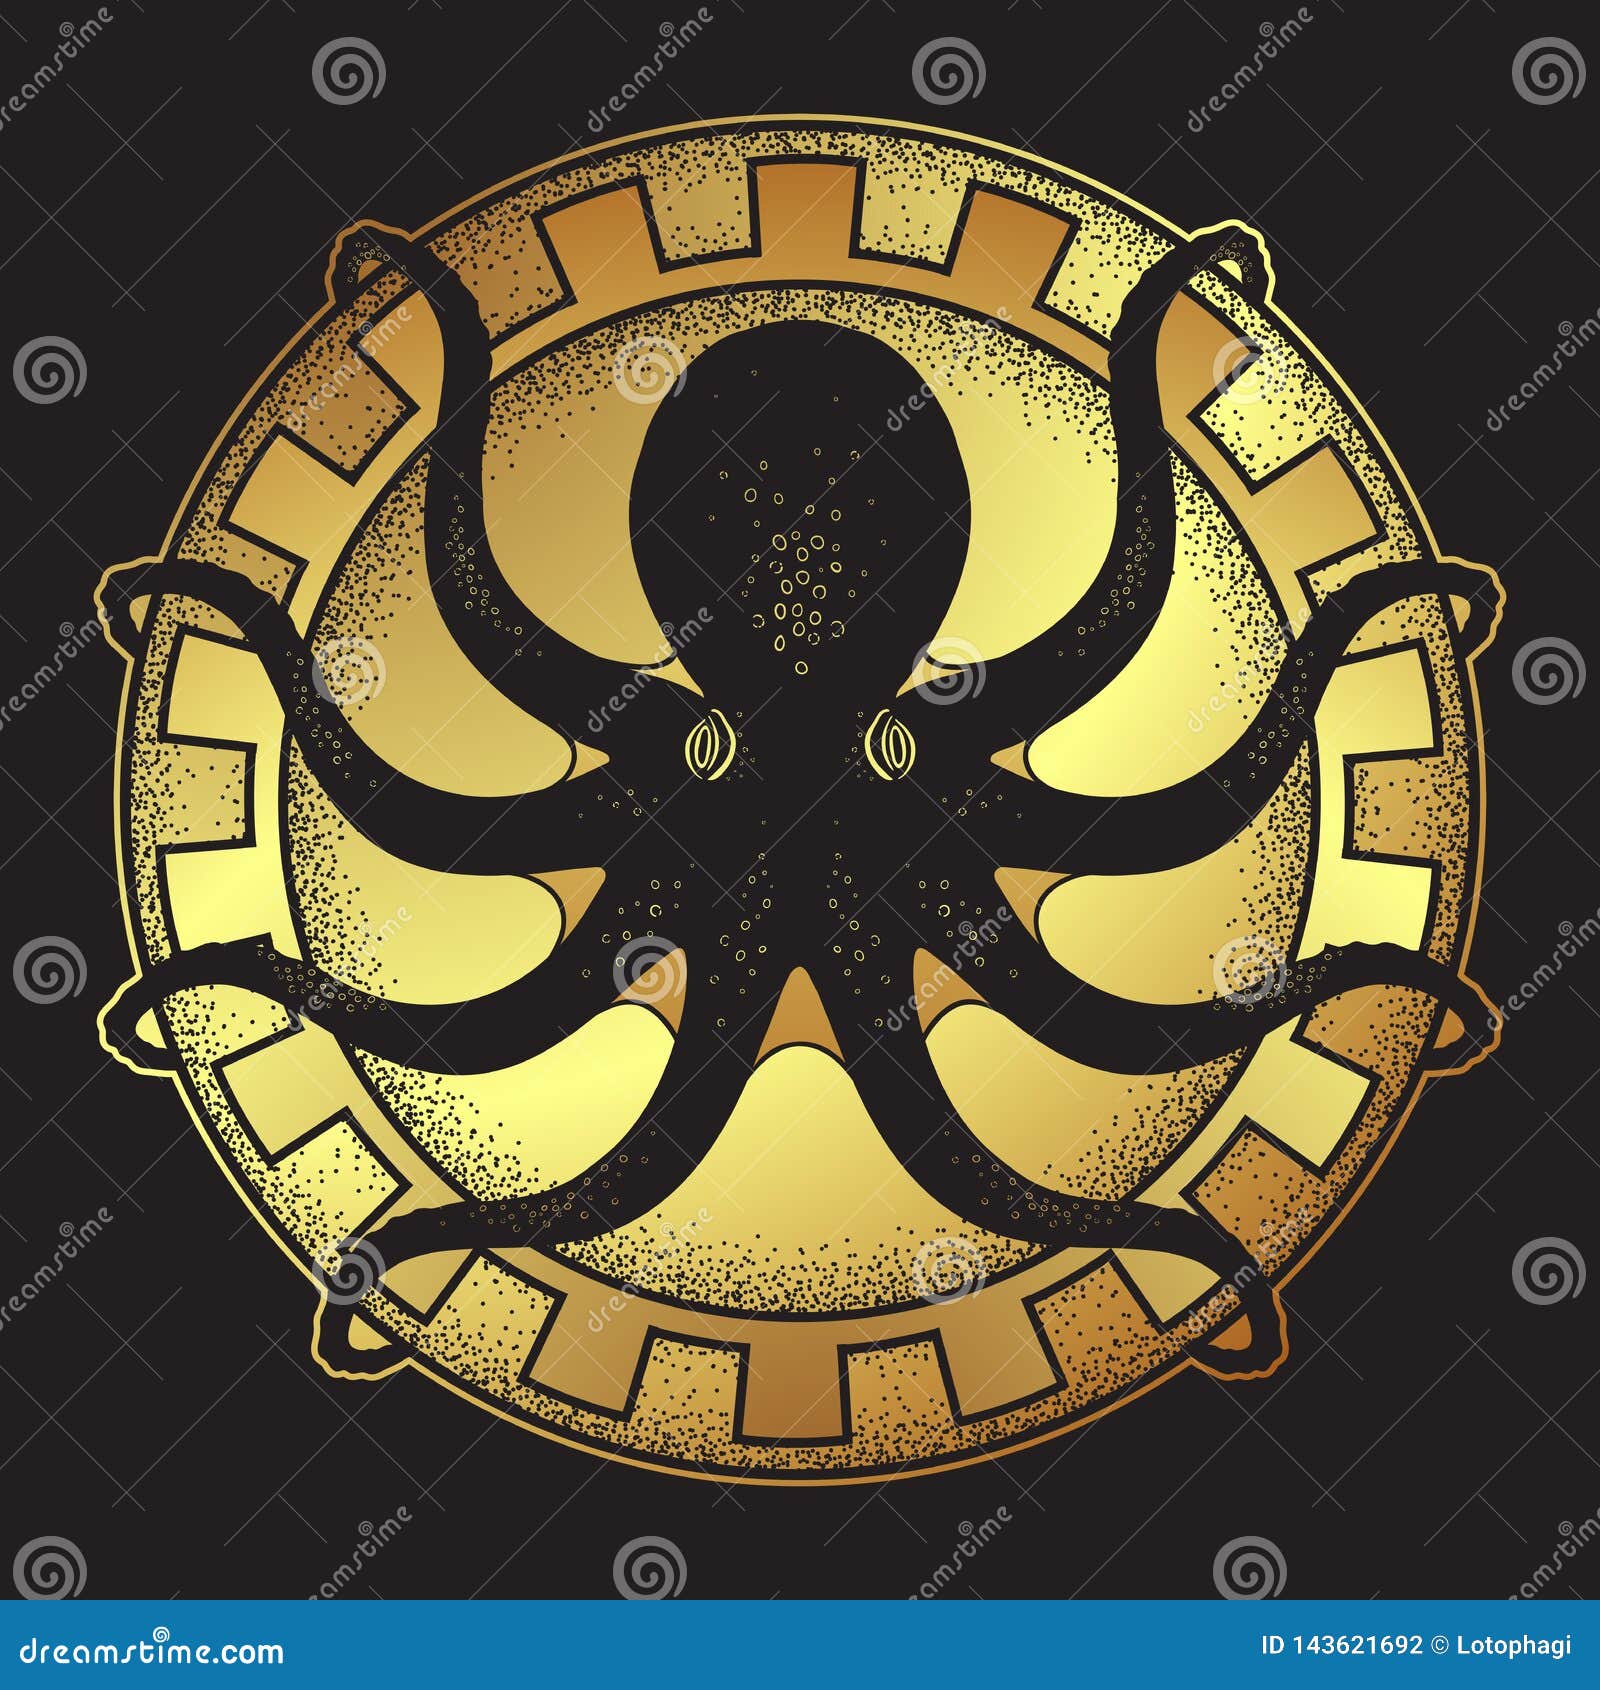 kraken on shield hand drawn black and gold line art and dot work  vetor 